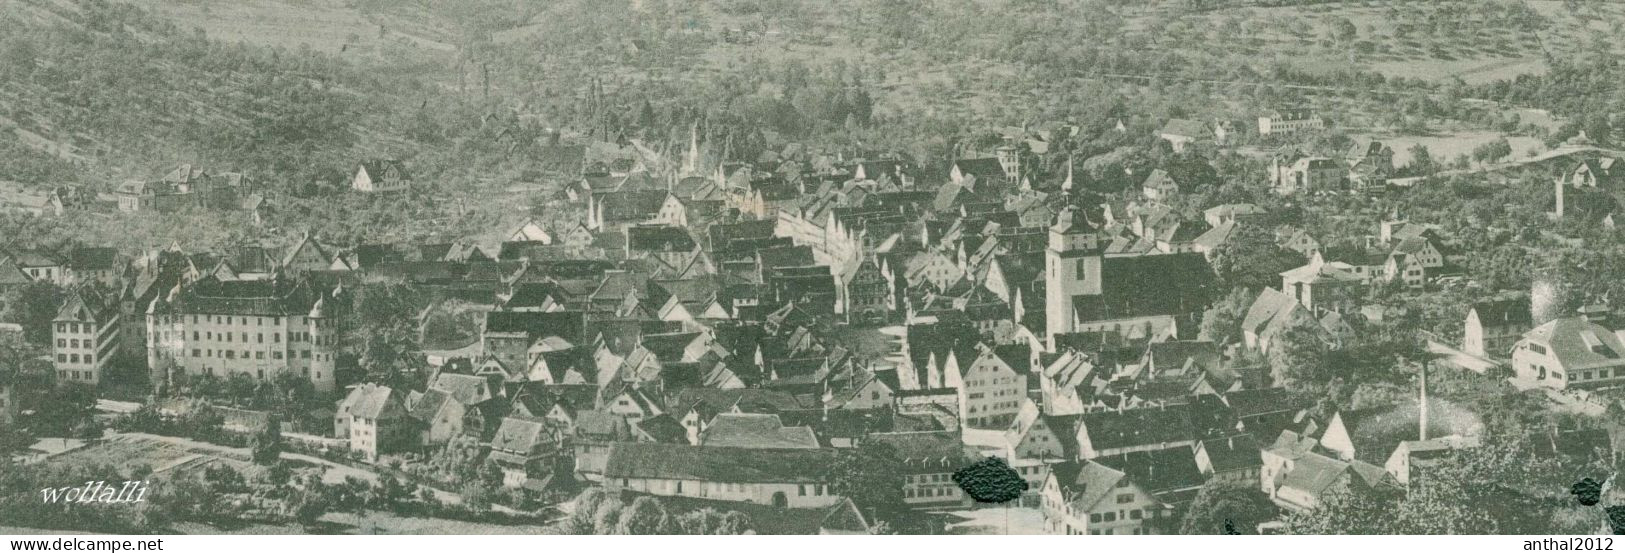 Rar Litho Künzelsau Wohnhäuser Gesamtansicht 15.9.1909 Metz Tübingen - Kuenzelsau